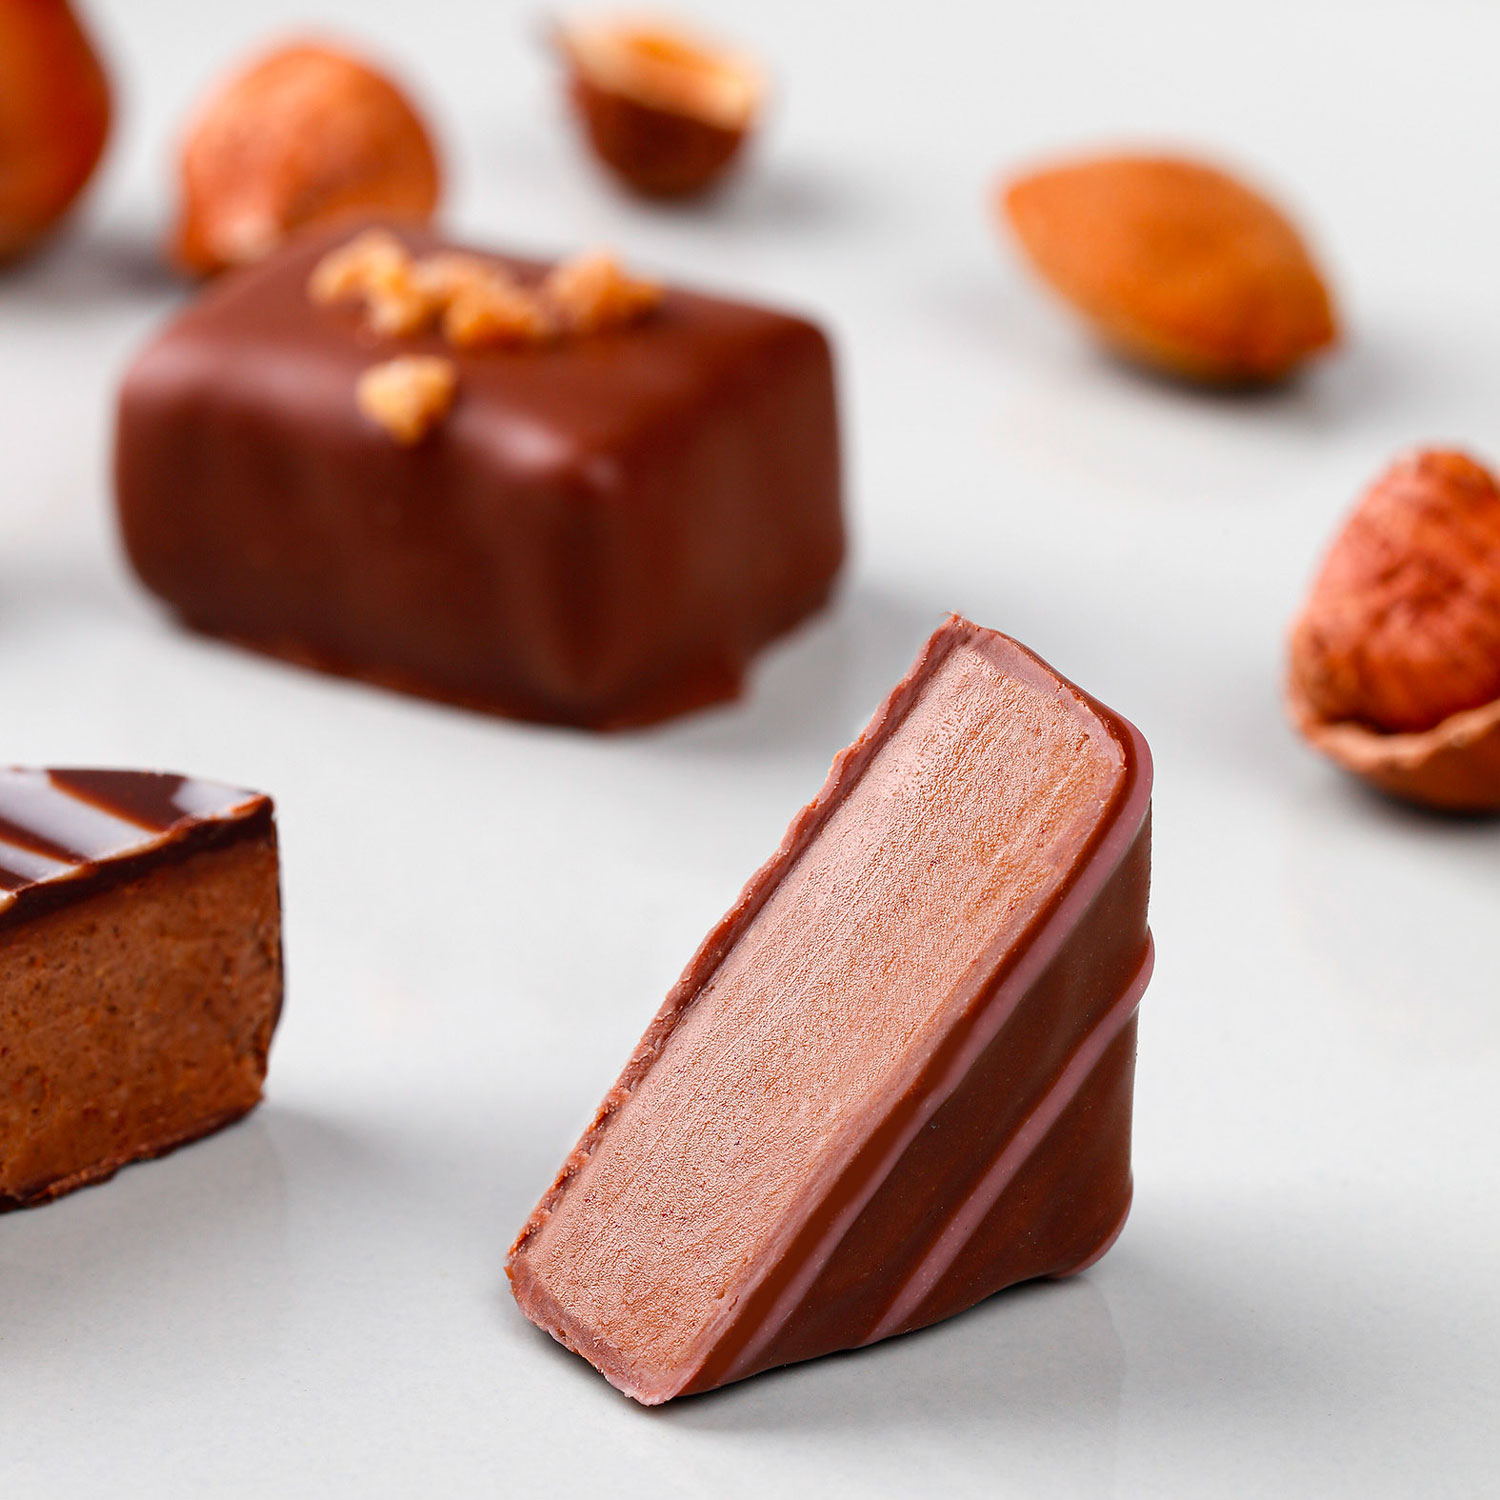 Bonbon chocolaté fourrés à l'orange confite & au pralin - Recette